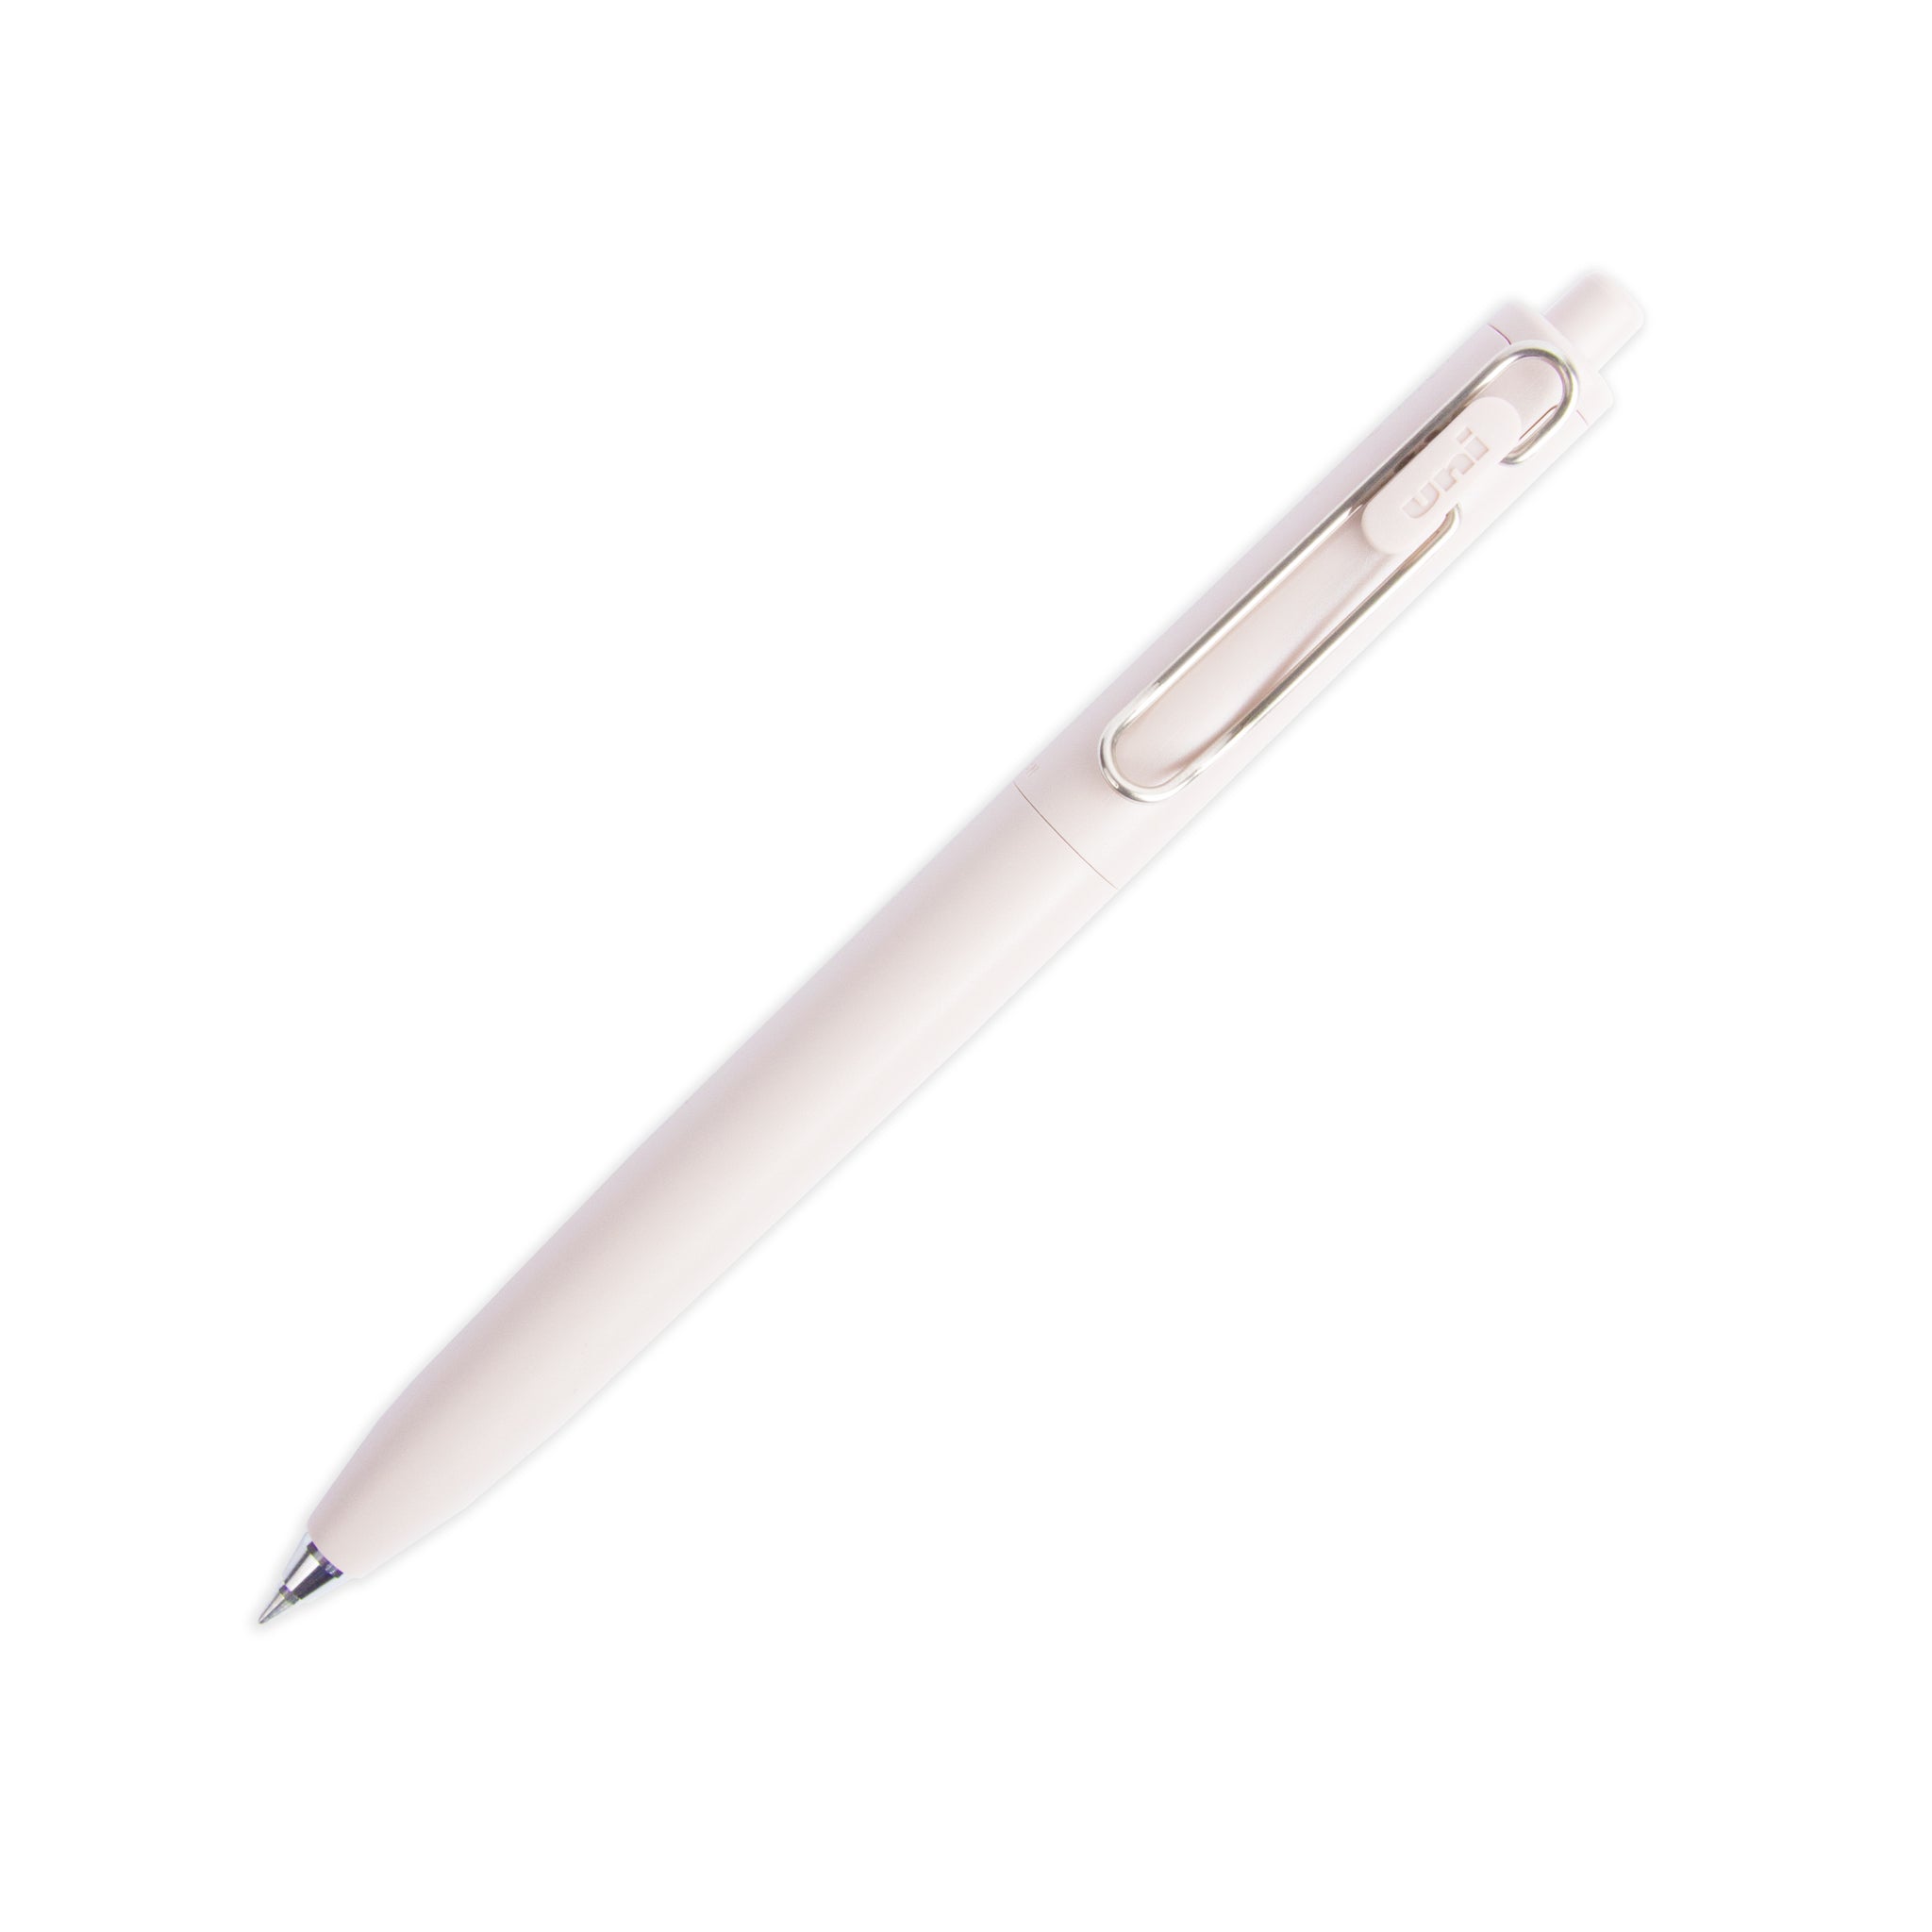 Uni-ball One F. 0.5mm Gel Pen Ink Refill